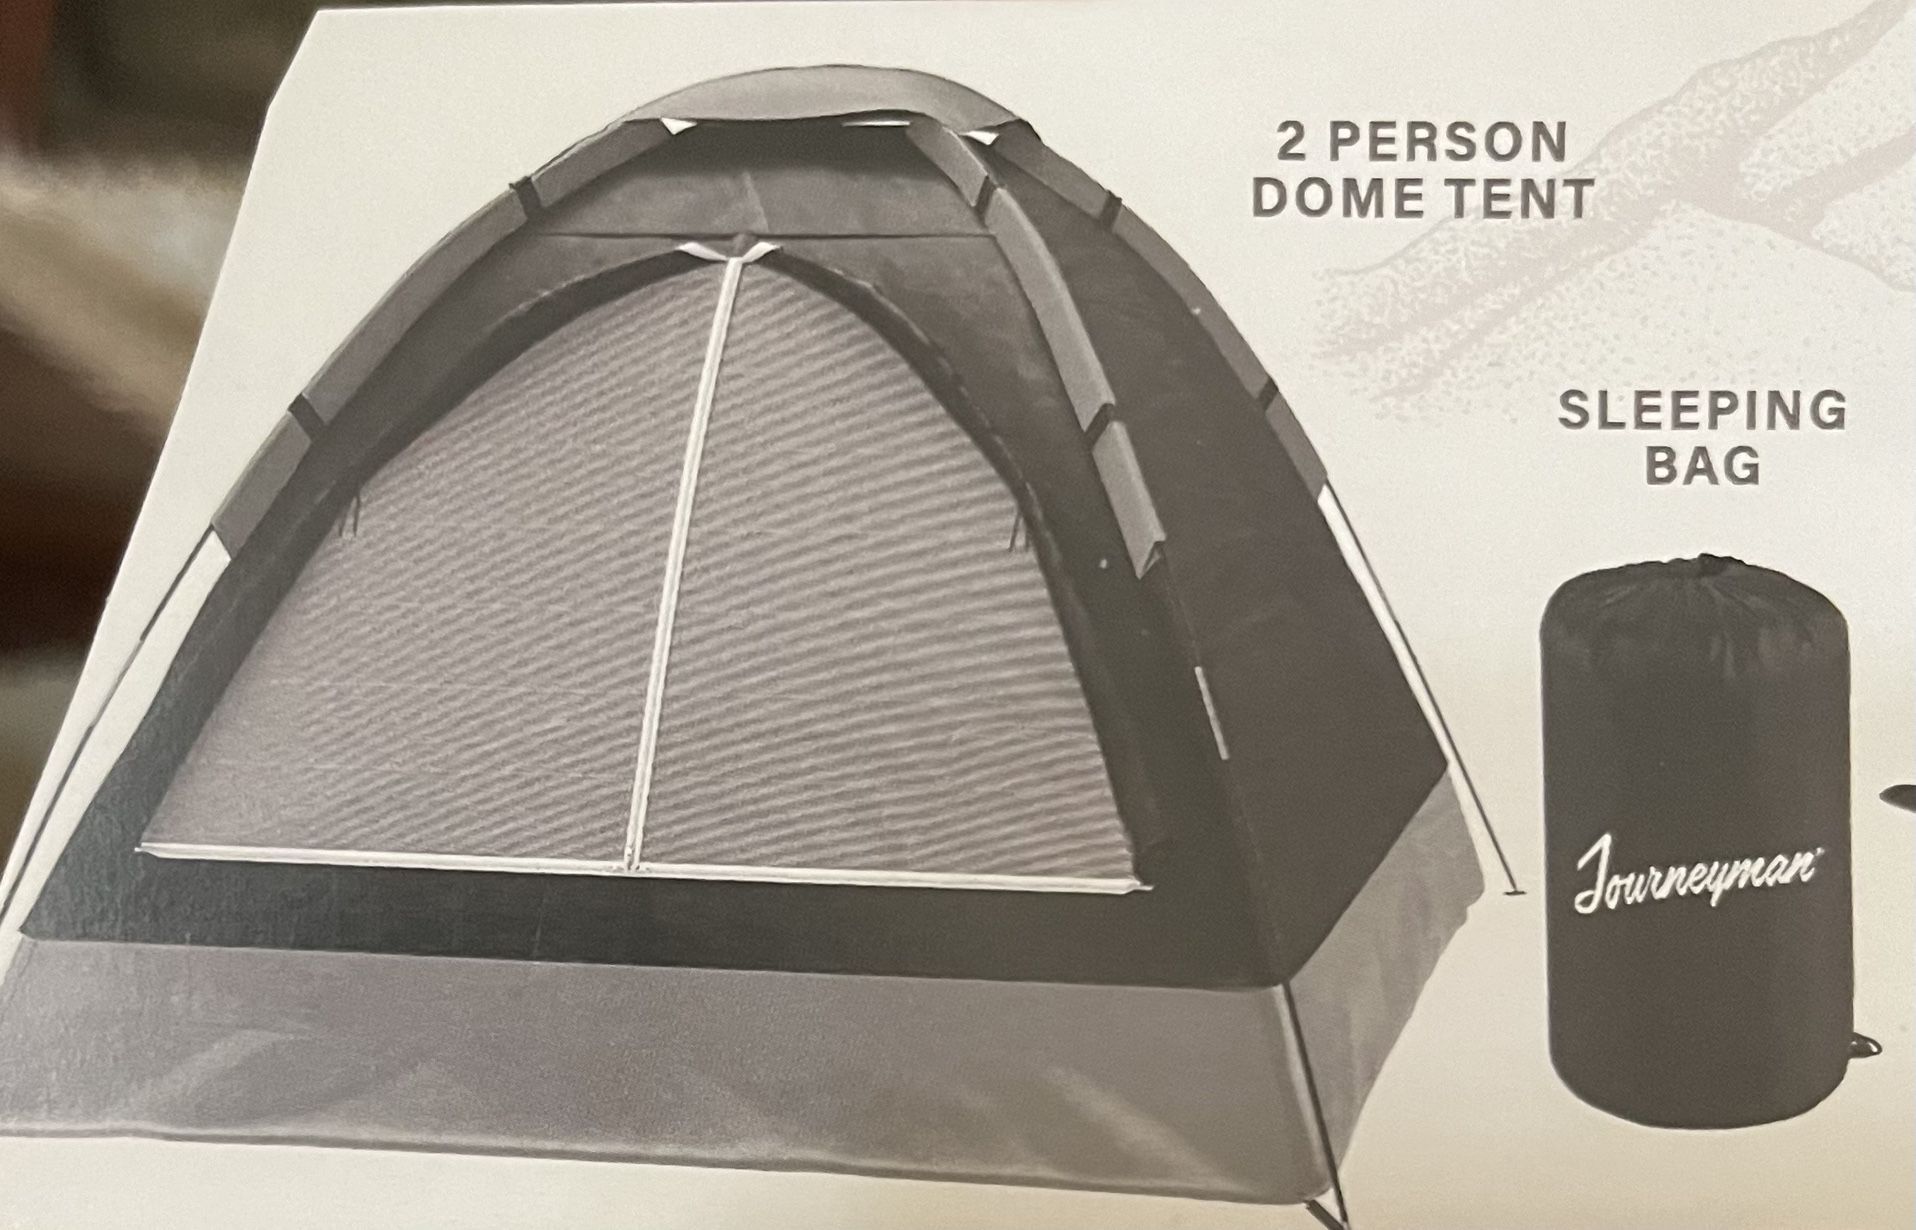 Tent and Sleeping Bag 